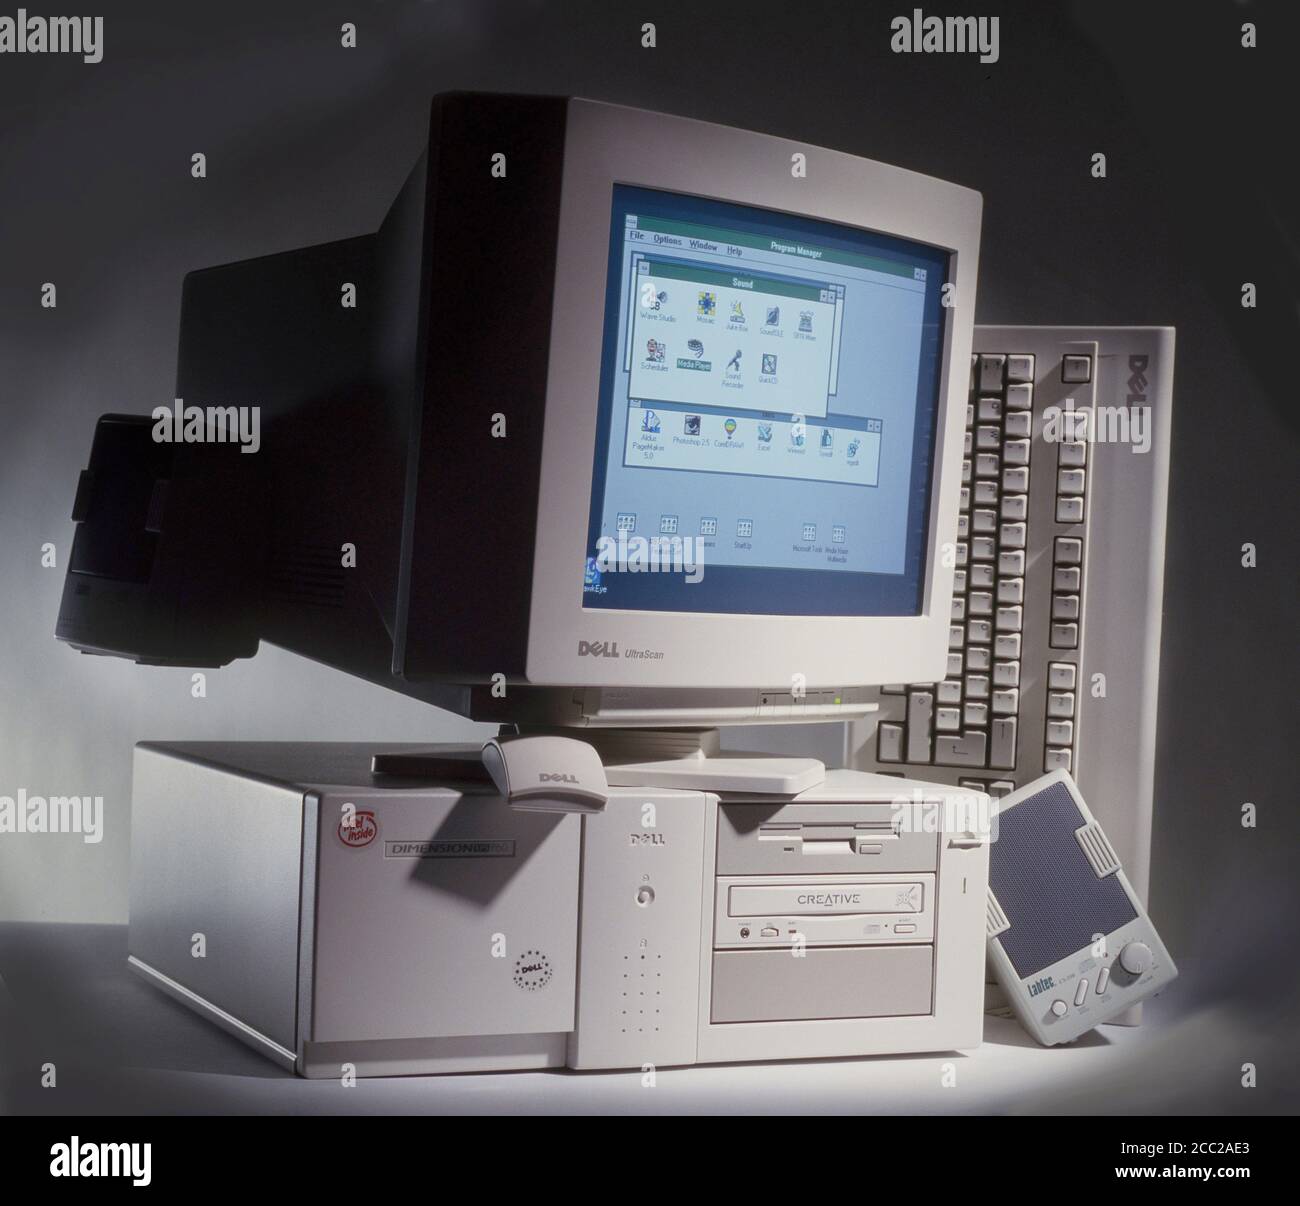 Dell Dimension XPS Pentium-Computer der 1990er Jahre. Beigefarbene Box, mit CRT-Monitor, Tastatur, Maus und Lautsprechern. Stockfoto